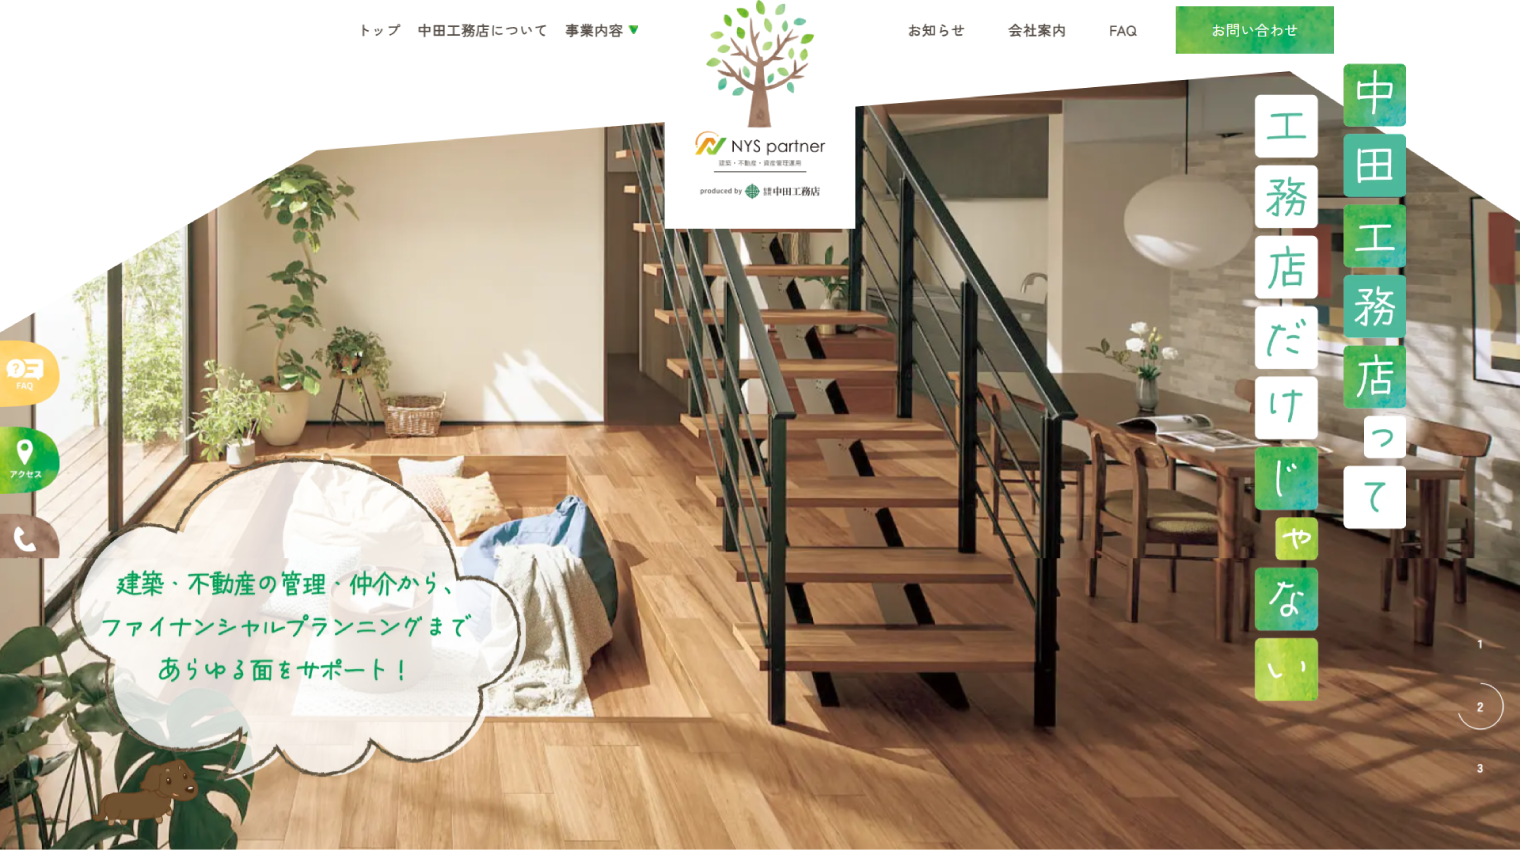 大阪のホームページ制作会社applismの工務店のホームページ制作実績